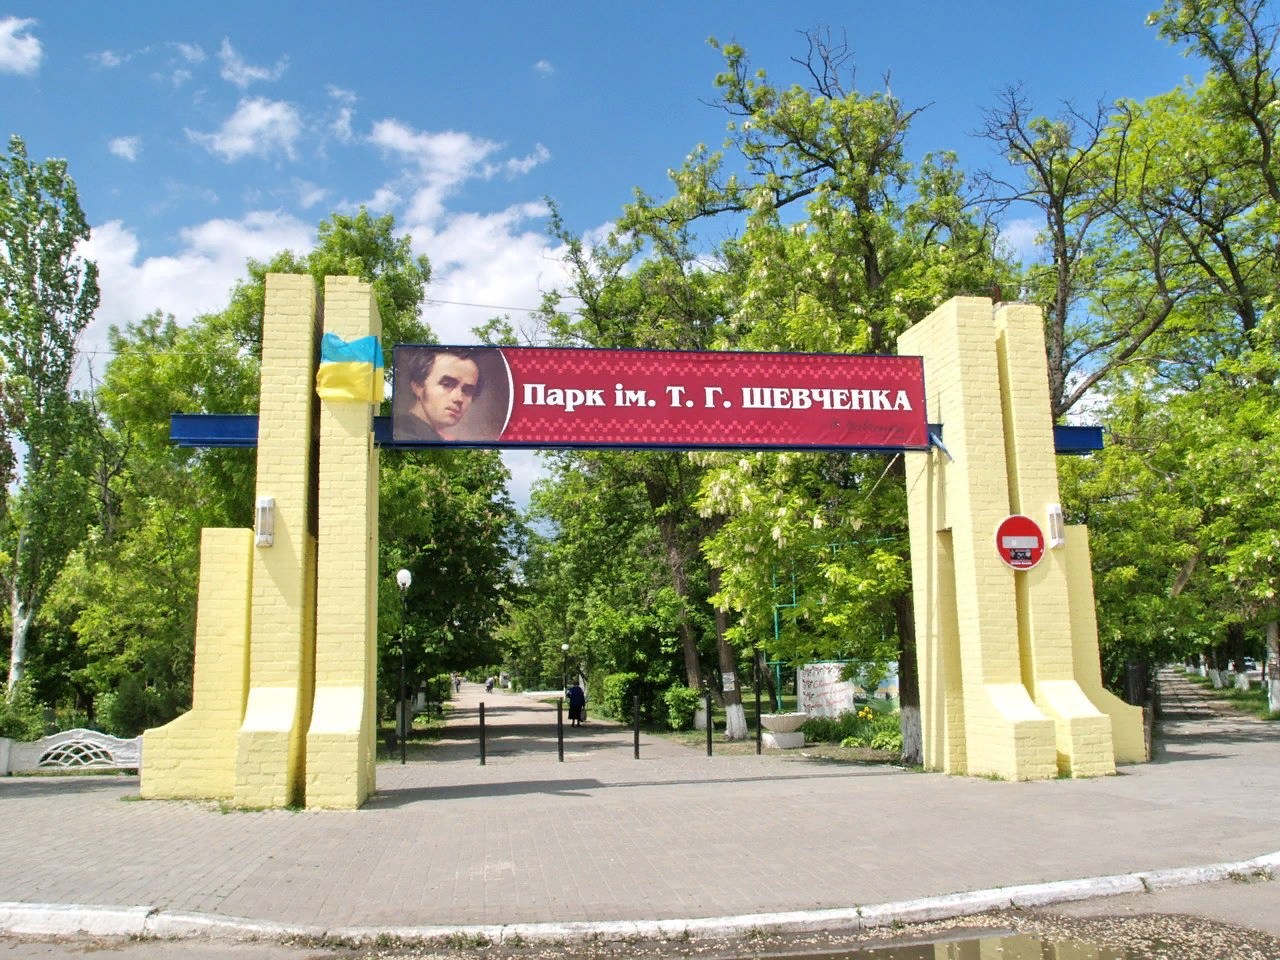 Центральный вход в парк имени Т.Г. Шевченко в Геническе